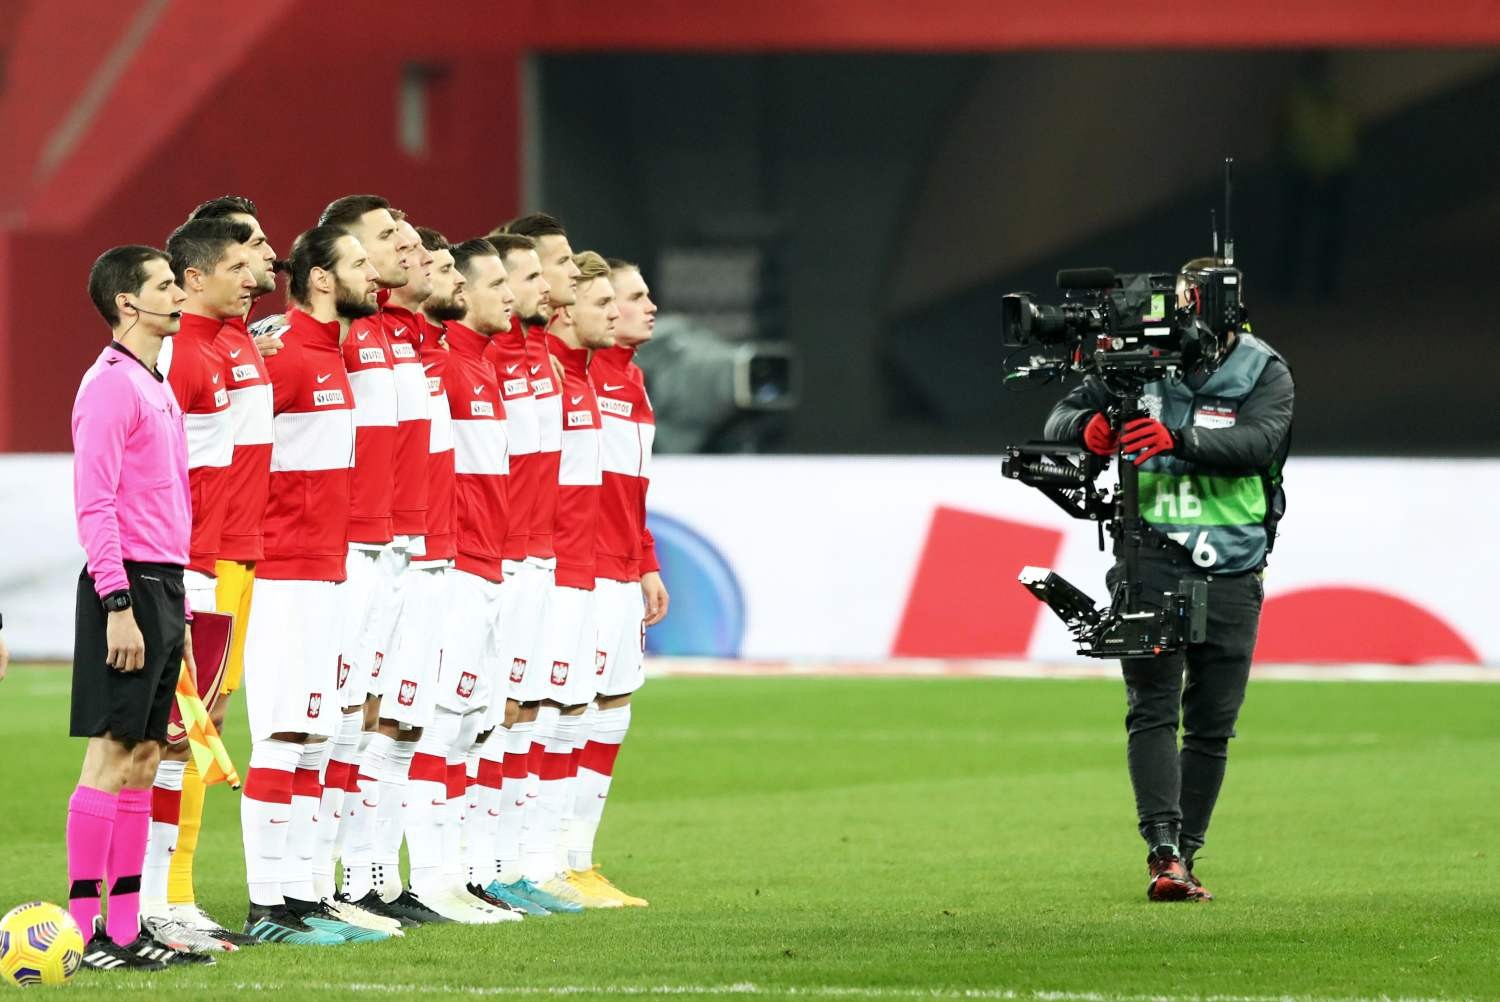 Reprezentacja Polski: Mecz EURO 2020 ze Szwecją już w środę. Oni go skomentują